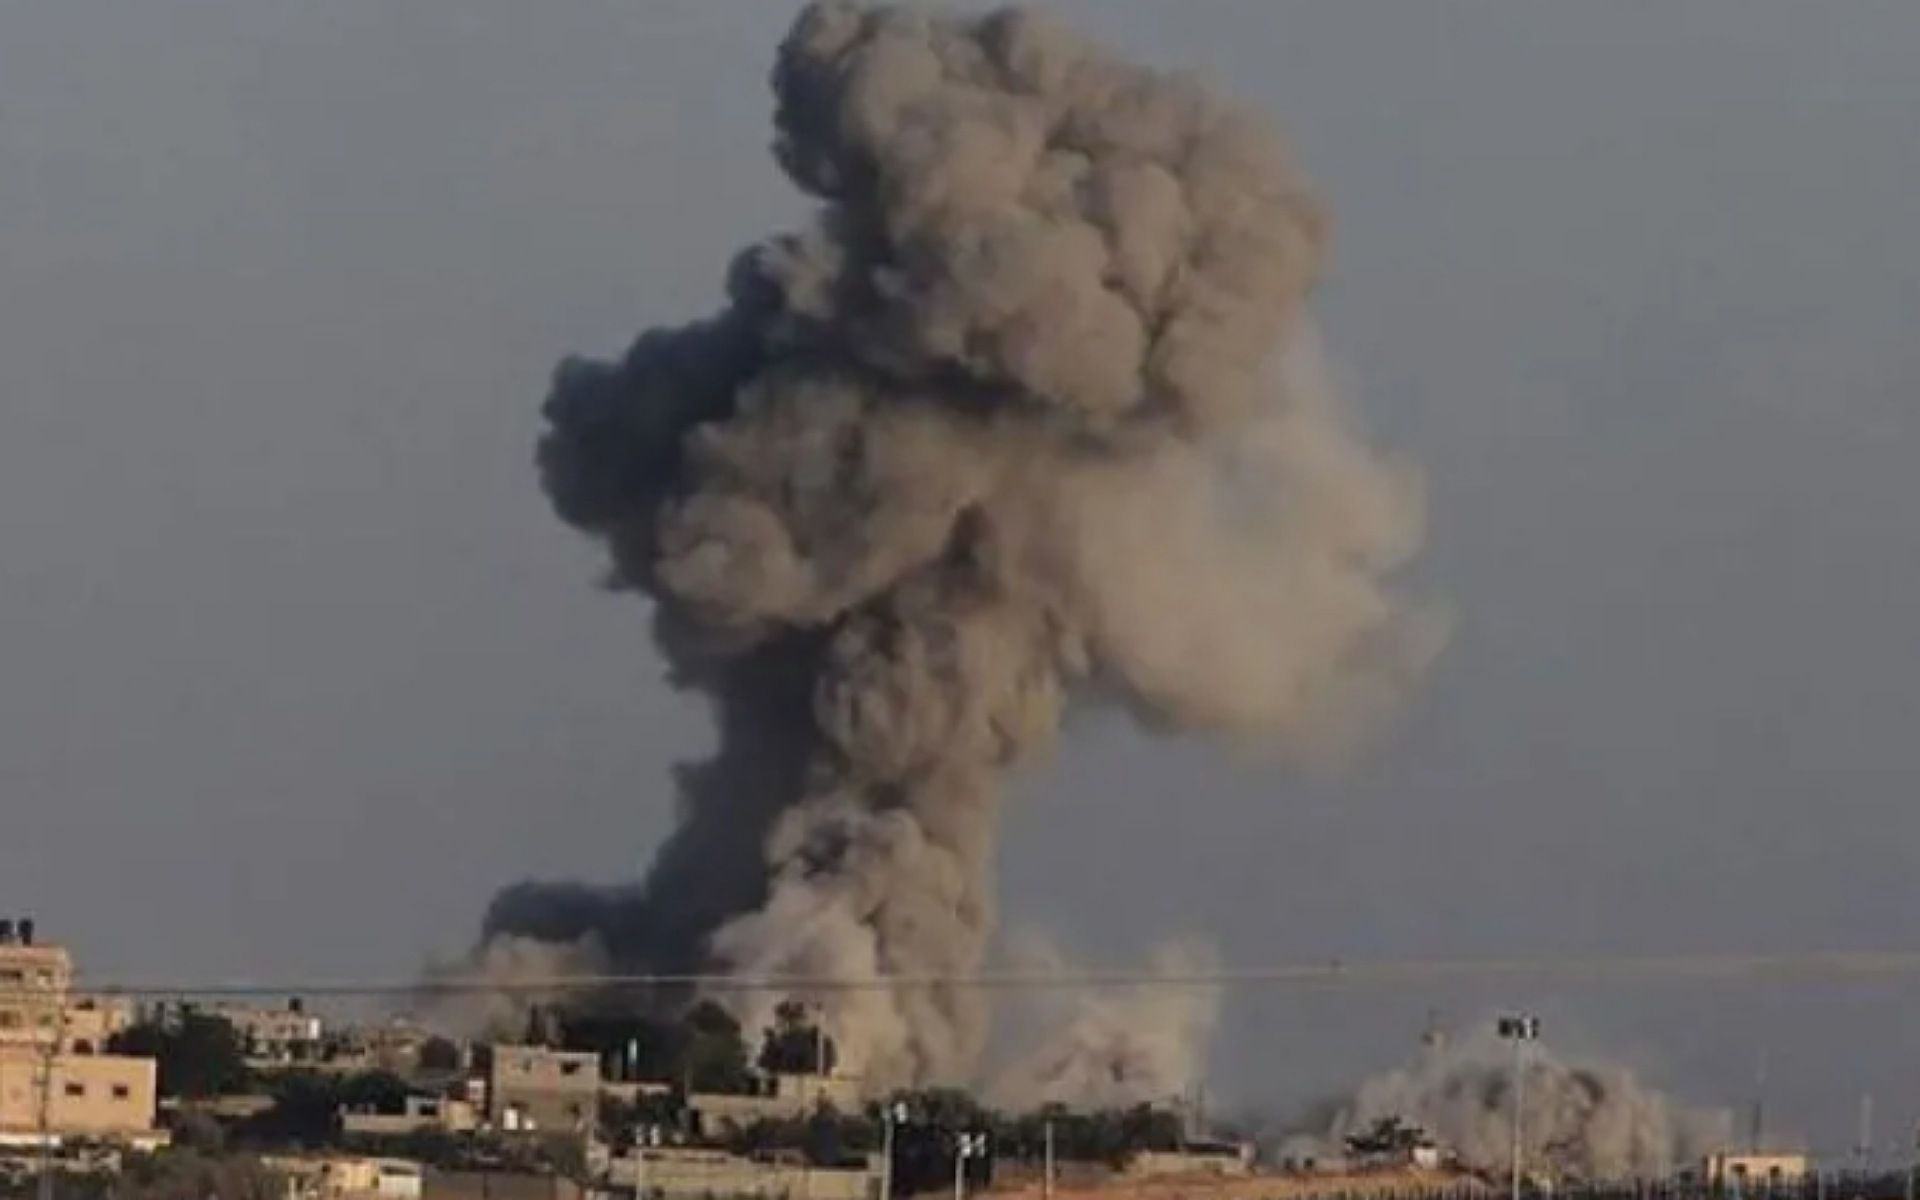 Arsip foto - Kepulan asap tampak membubung menyusul serangan Israel di Kota Rafah, Jalur Gaza selatan, Palestina 